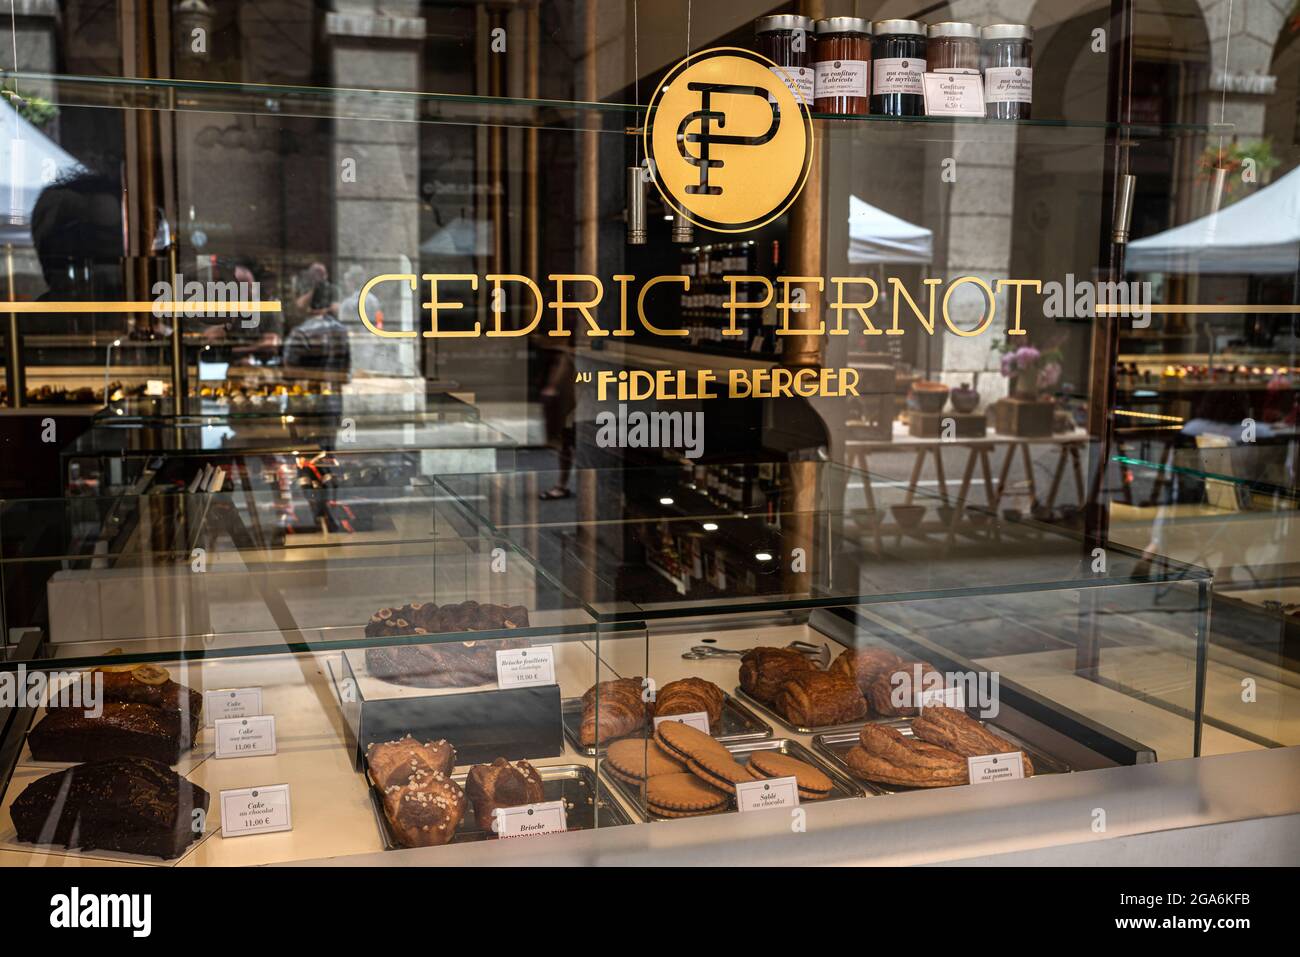 La plus ancienne boutique de la ville de Chambéry est une véritable institution, la pâtisserie Cédric Pernot. Chambéry, département de Savoie, région Auvergne-Rhône-Alpes Banque D'Images